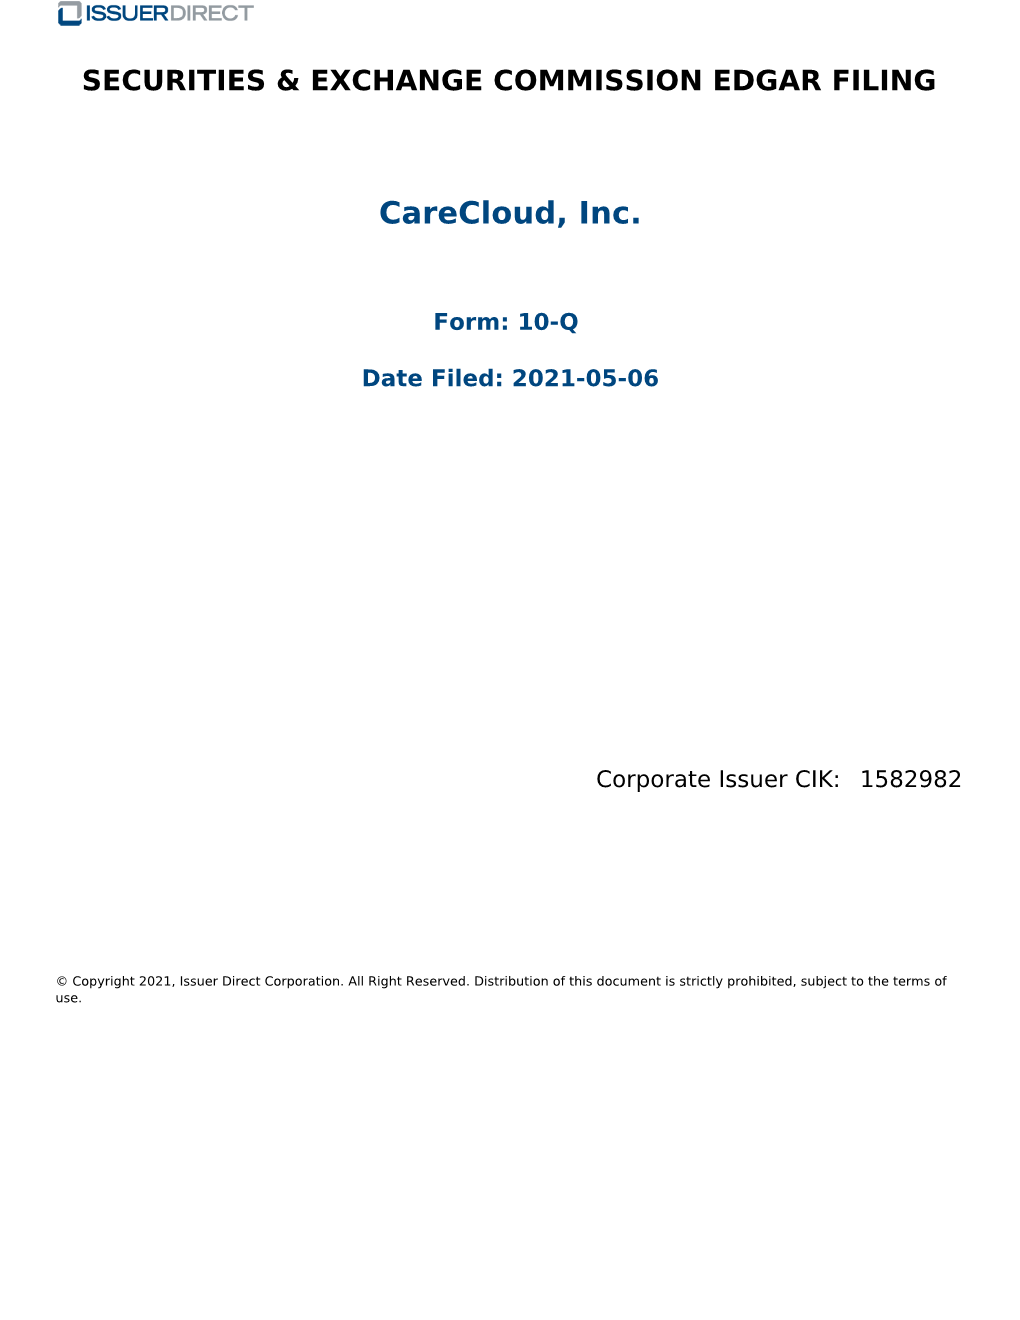 Carecloud, Inc